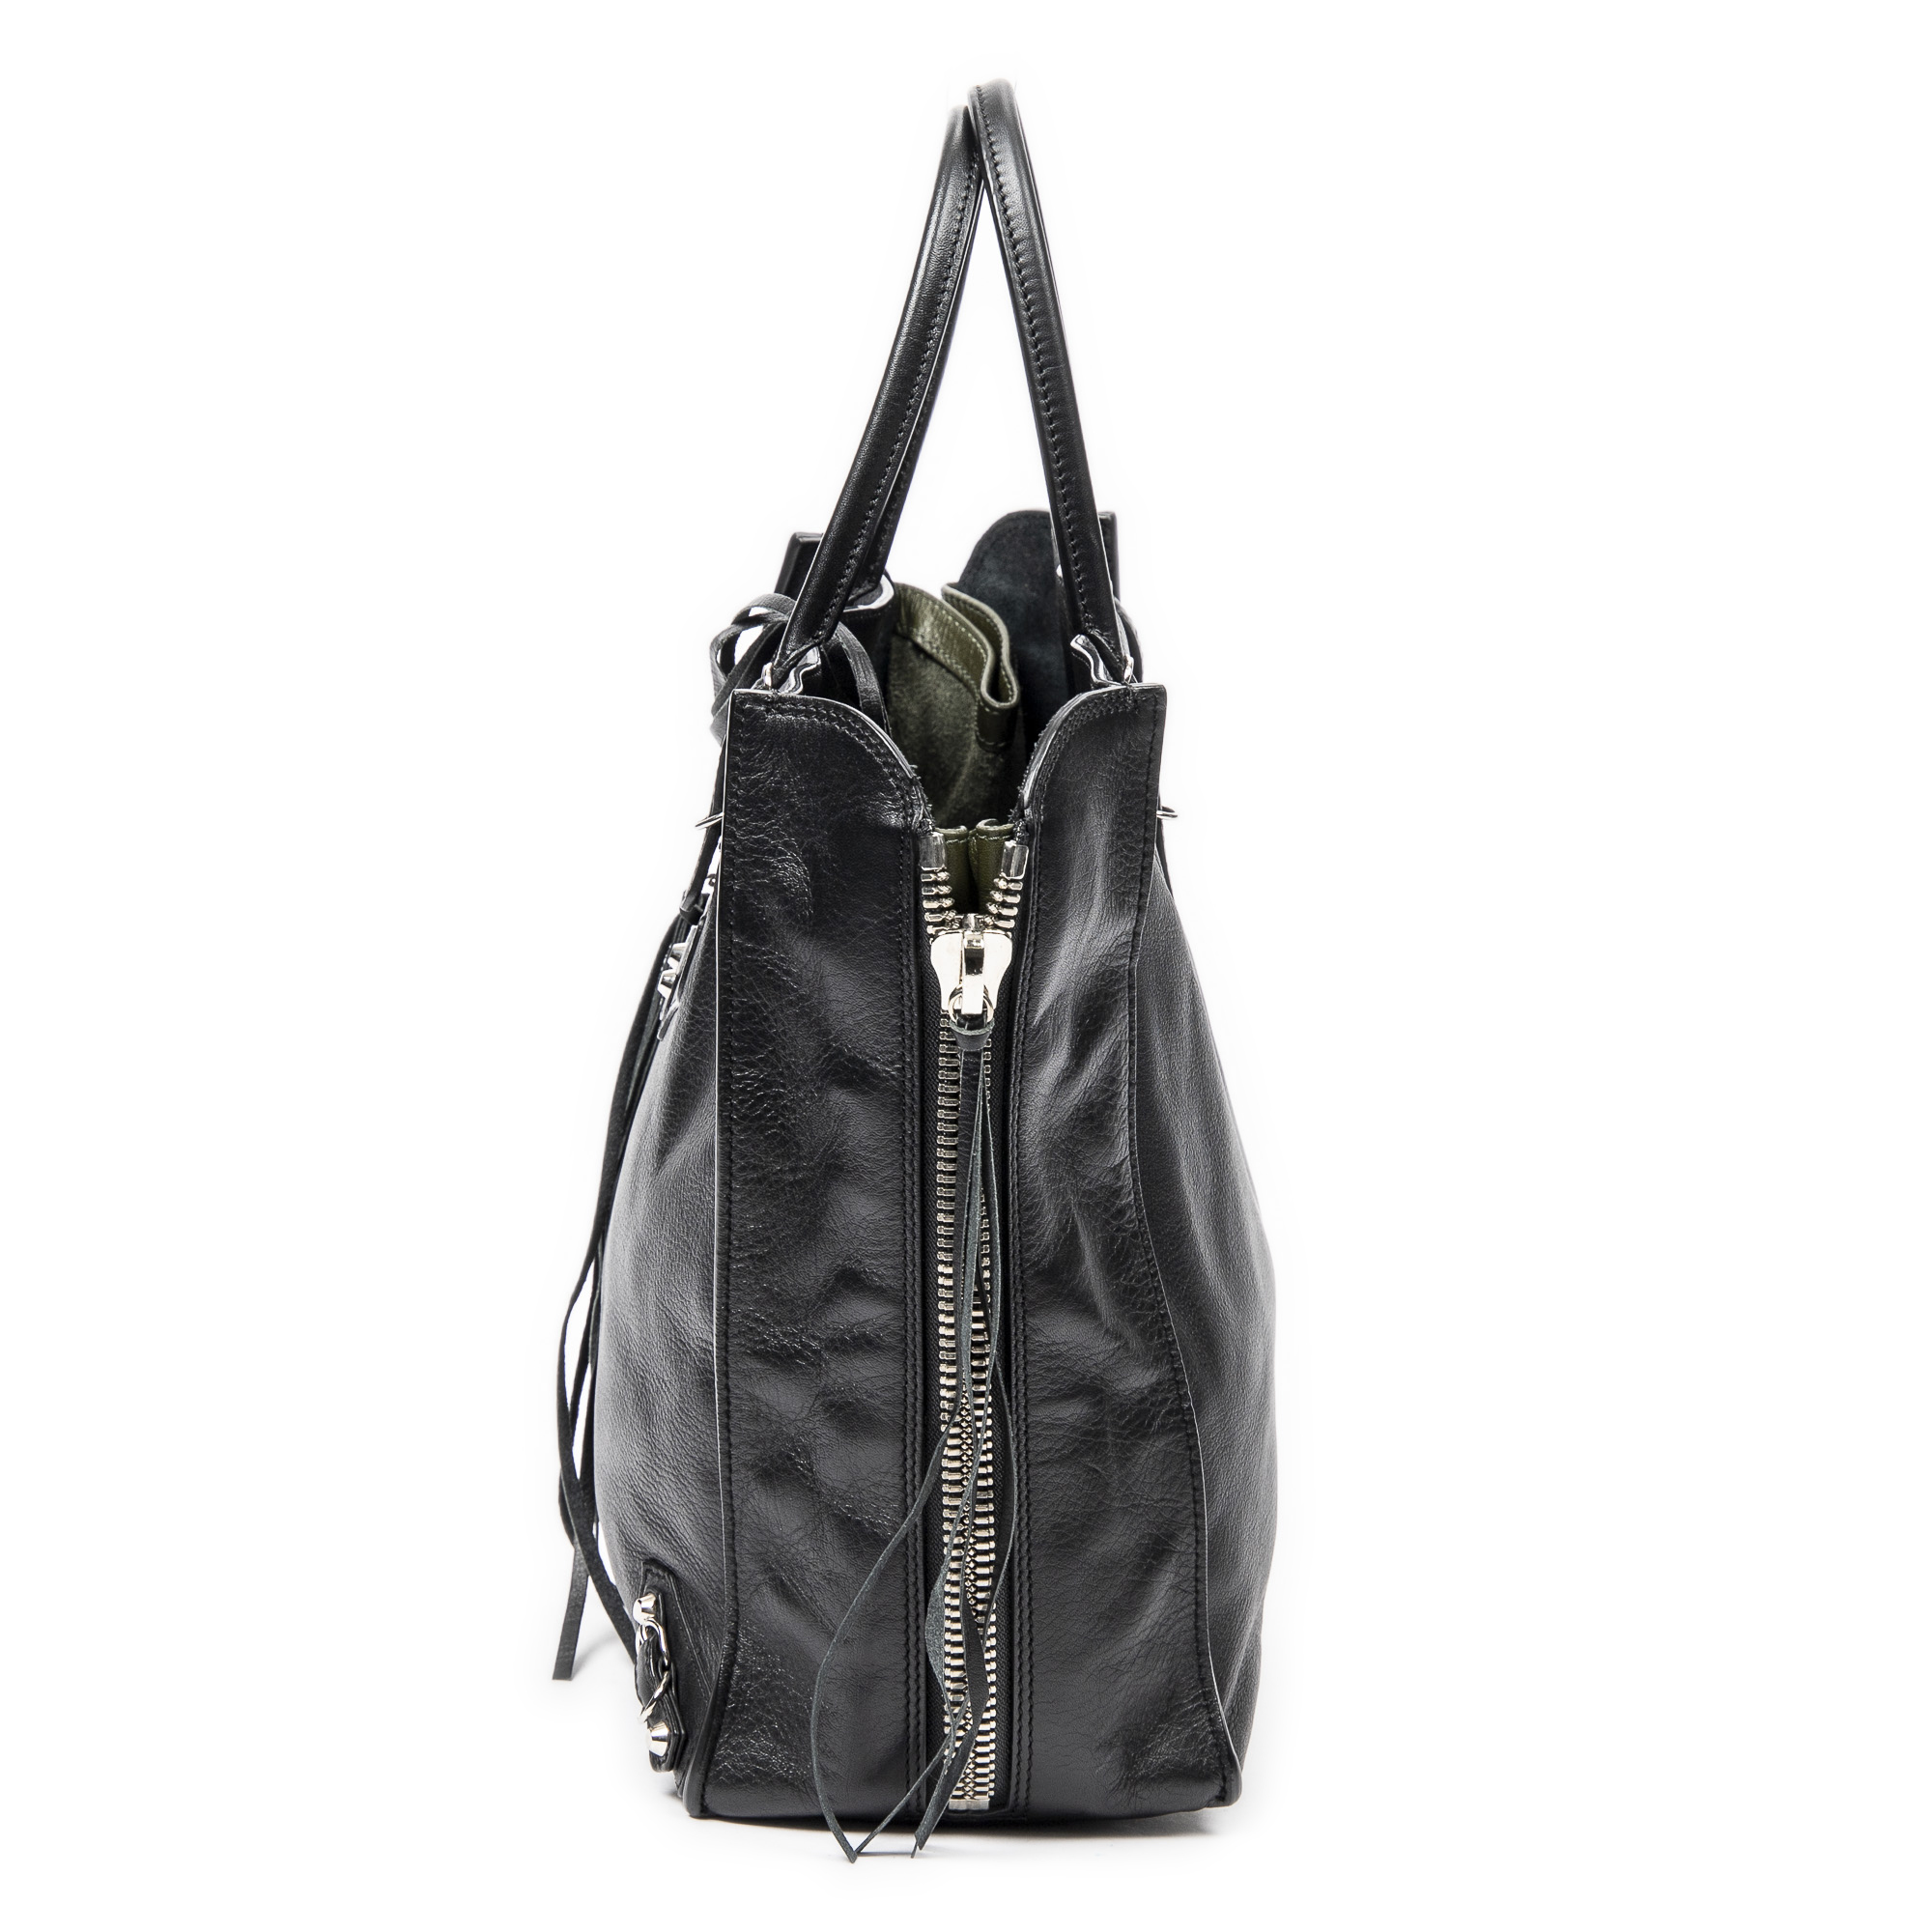 Balenciaga Papier A5 Leather Tote Bag, Balenciaga Handbags